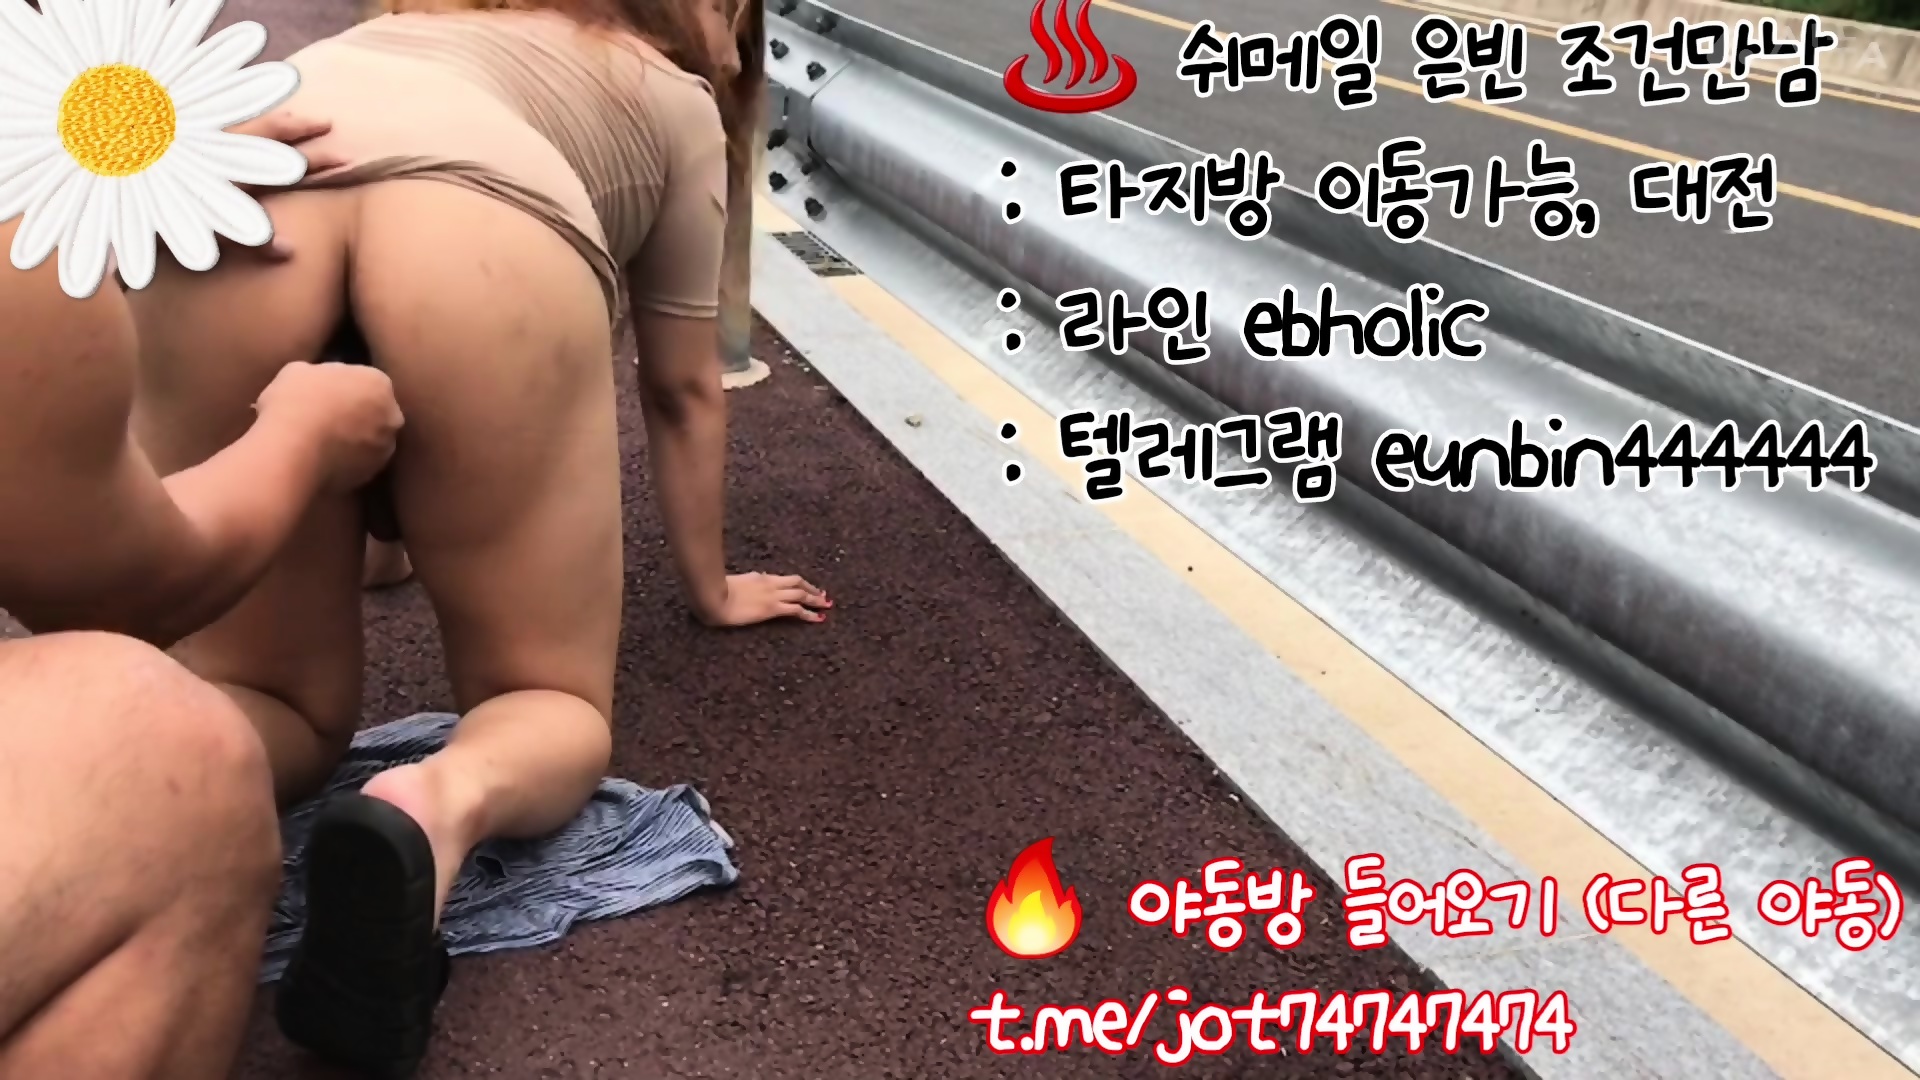 Korea Korean Outdoor Sex 야외섹스 트랜스젠더 쉬메일 은빈 텔레그램 Eunbin444444